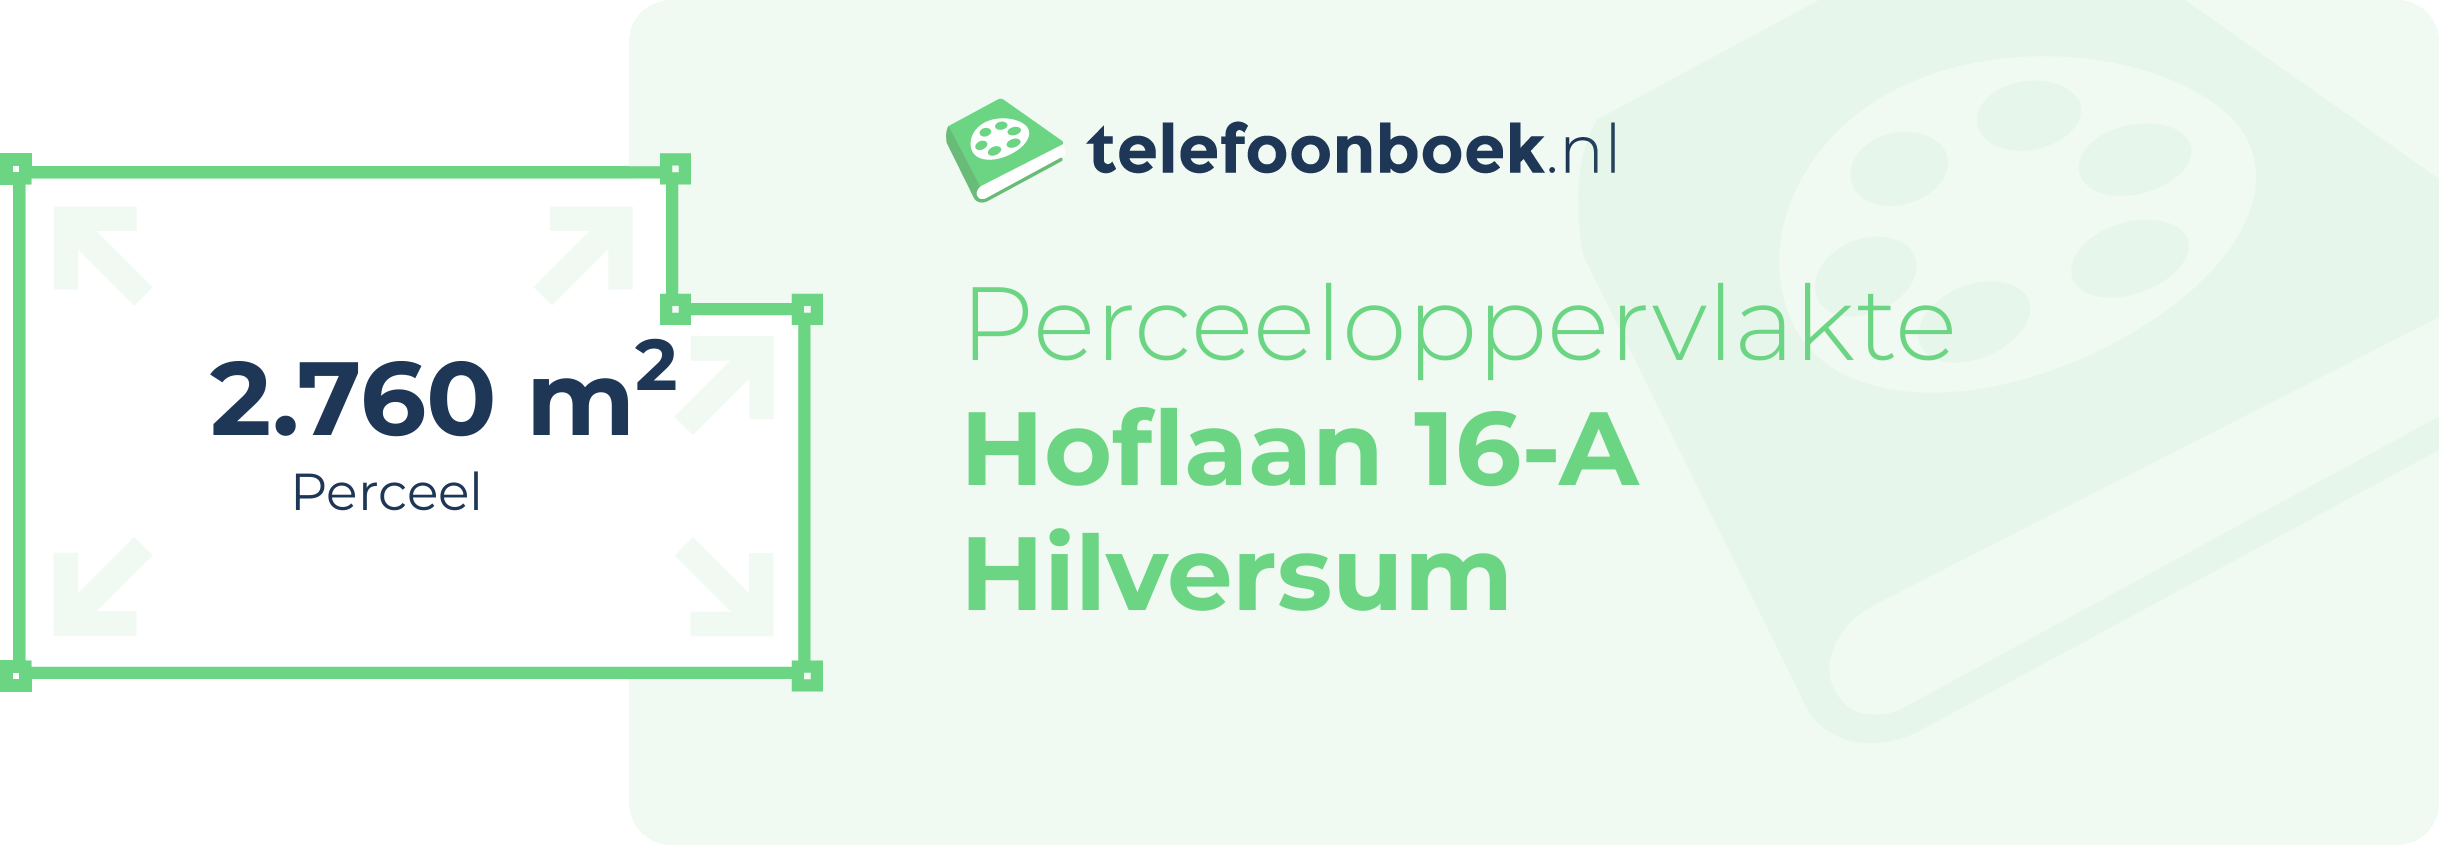 Perceeloppervlakte Hoflaan 16-A Hilversum